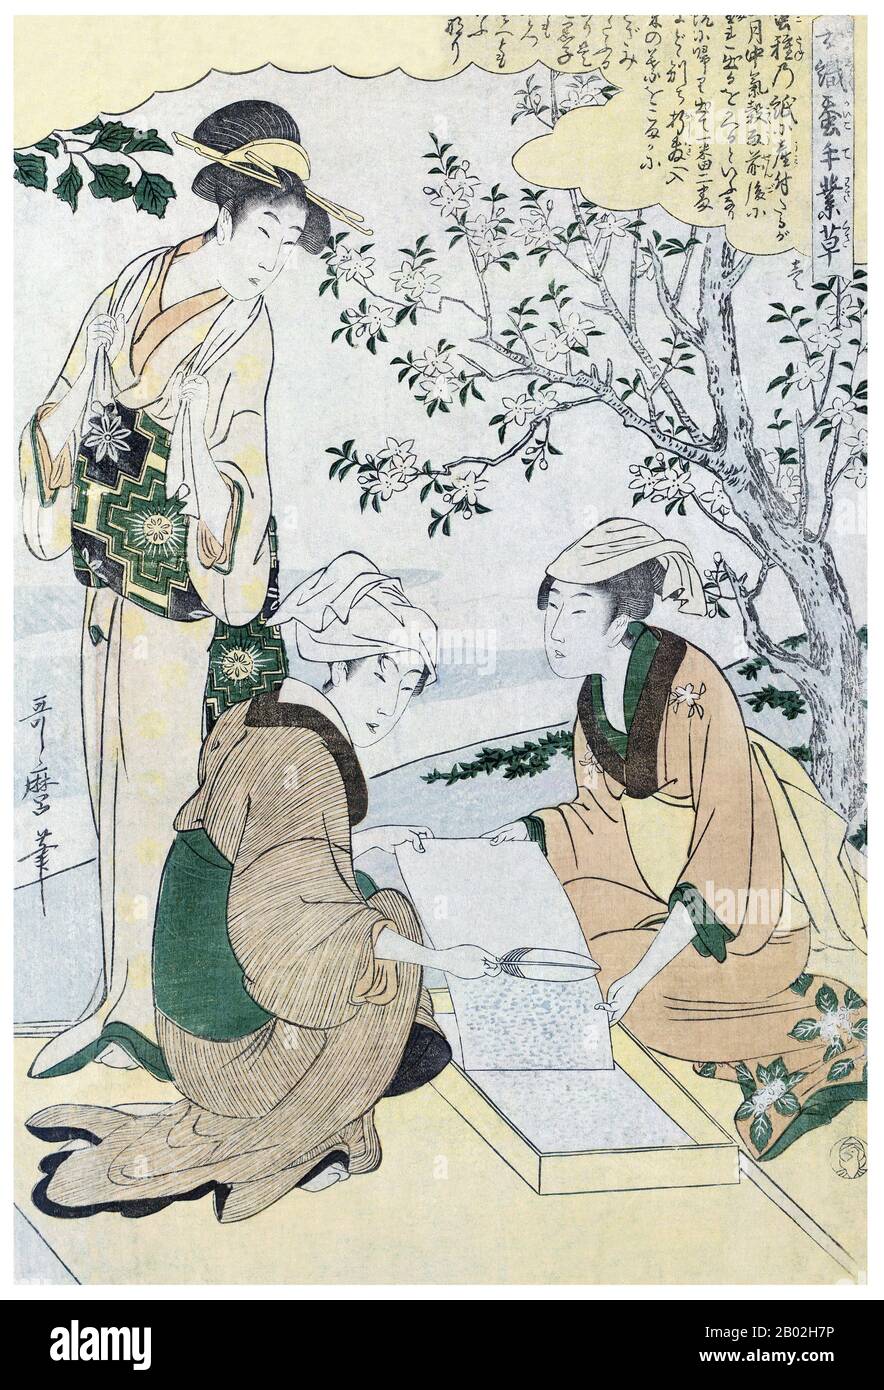 1. "Tendant les vers récemment hachés", représentant une femme avec une plume brossant les vers du papier sur lequel ils ont été incubés, deux autres femmes regardent. Kitagawa Utamaro (env. 1753 - 31 octobre 1806) était un peintre et graveur japonais, considéré comme l'un des plus grands artistes de gravures de bois (ukiyo-e). Il est surtout connu pour ses études magistralement composées de femmes, connues sous le nom de bijinga. Il a également produit des études sur la nature, notamment des livres illustrés d'insectes. Banque D'Images